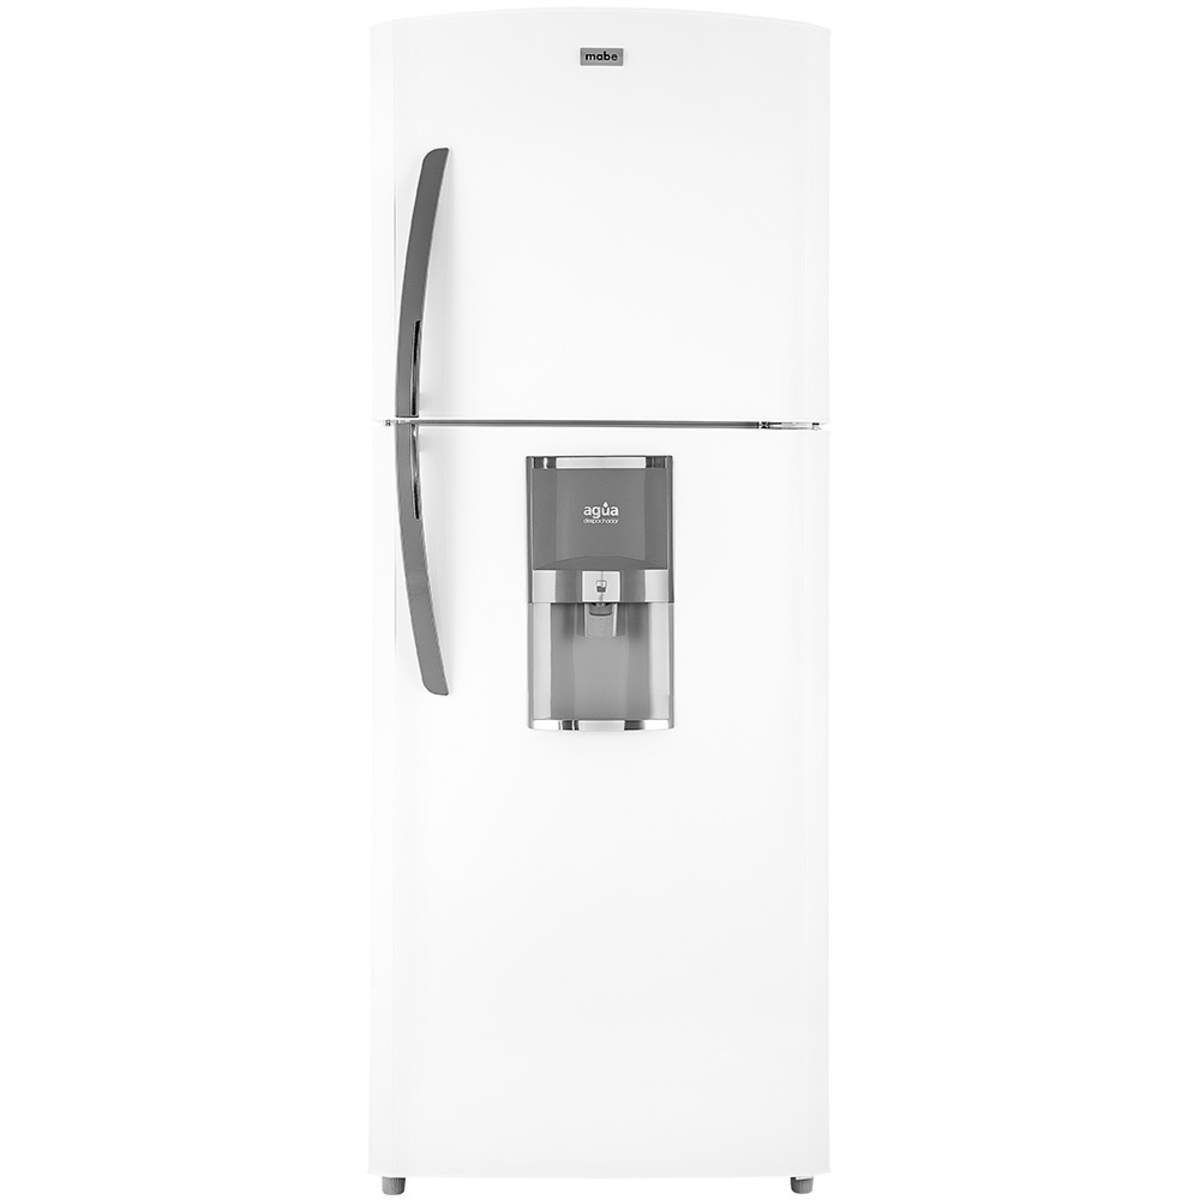 Refrigerador automático 368.77 L Blanco Mabe - RME1436YMXB2, Refrigeradores, Refrigeración